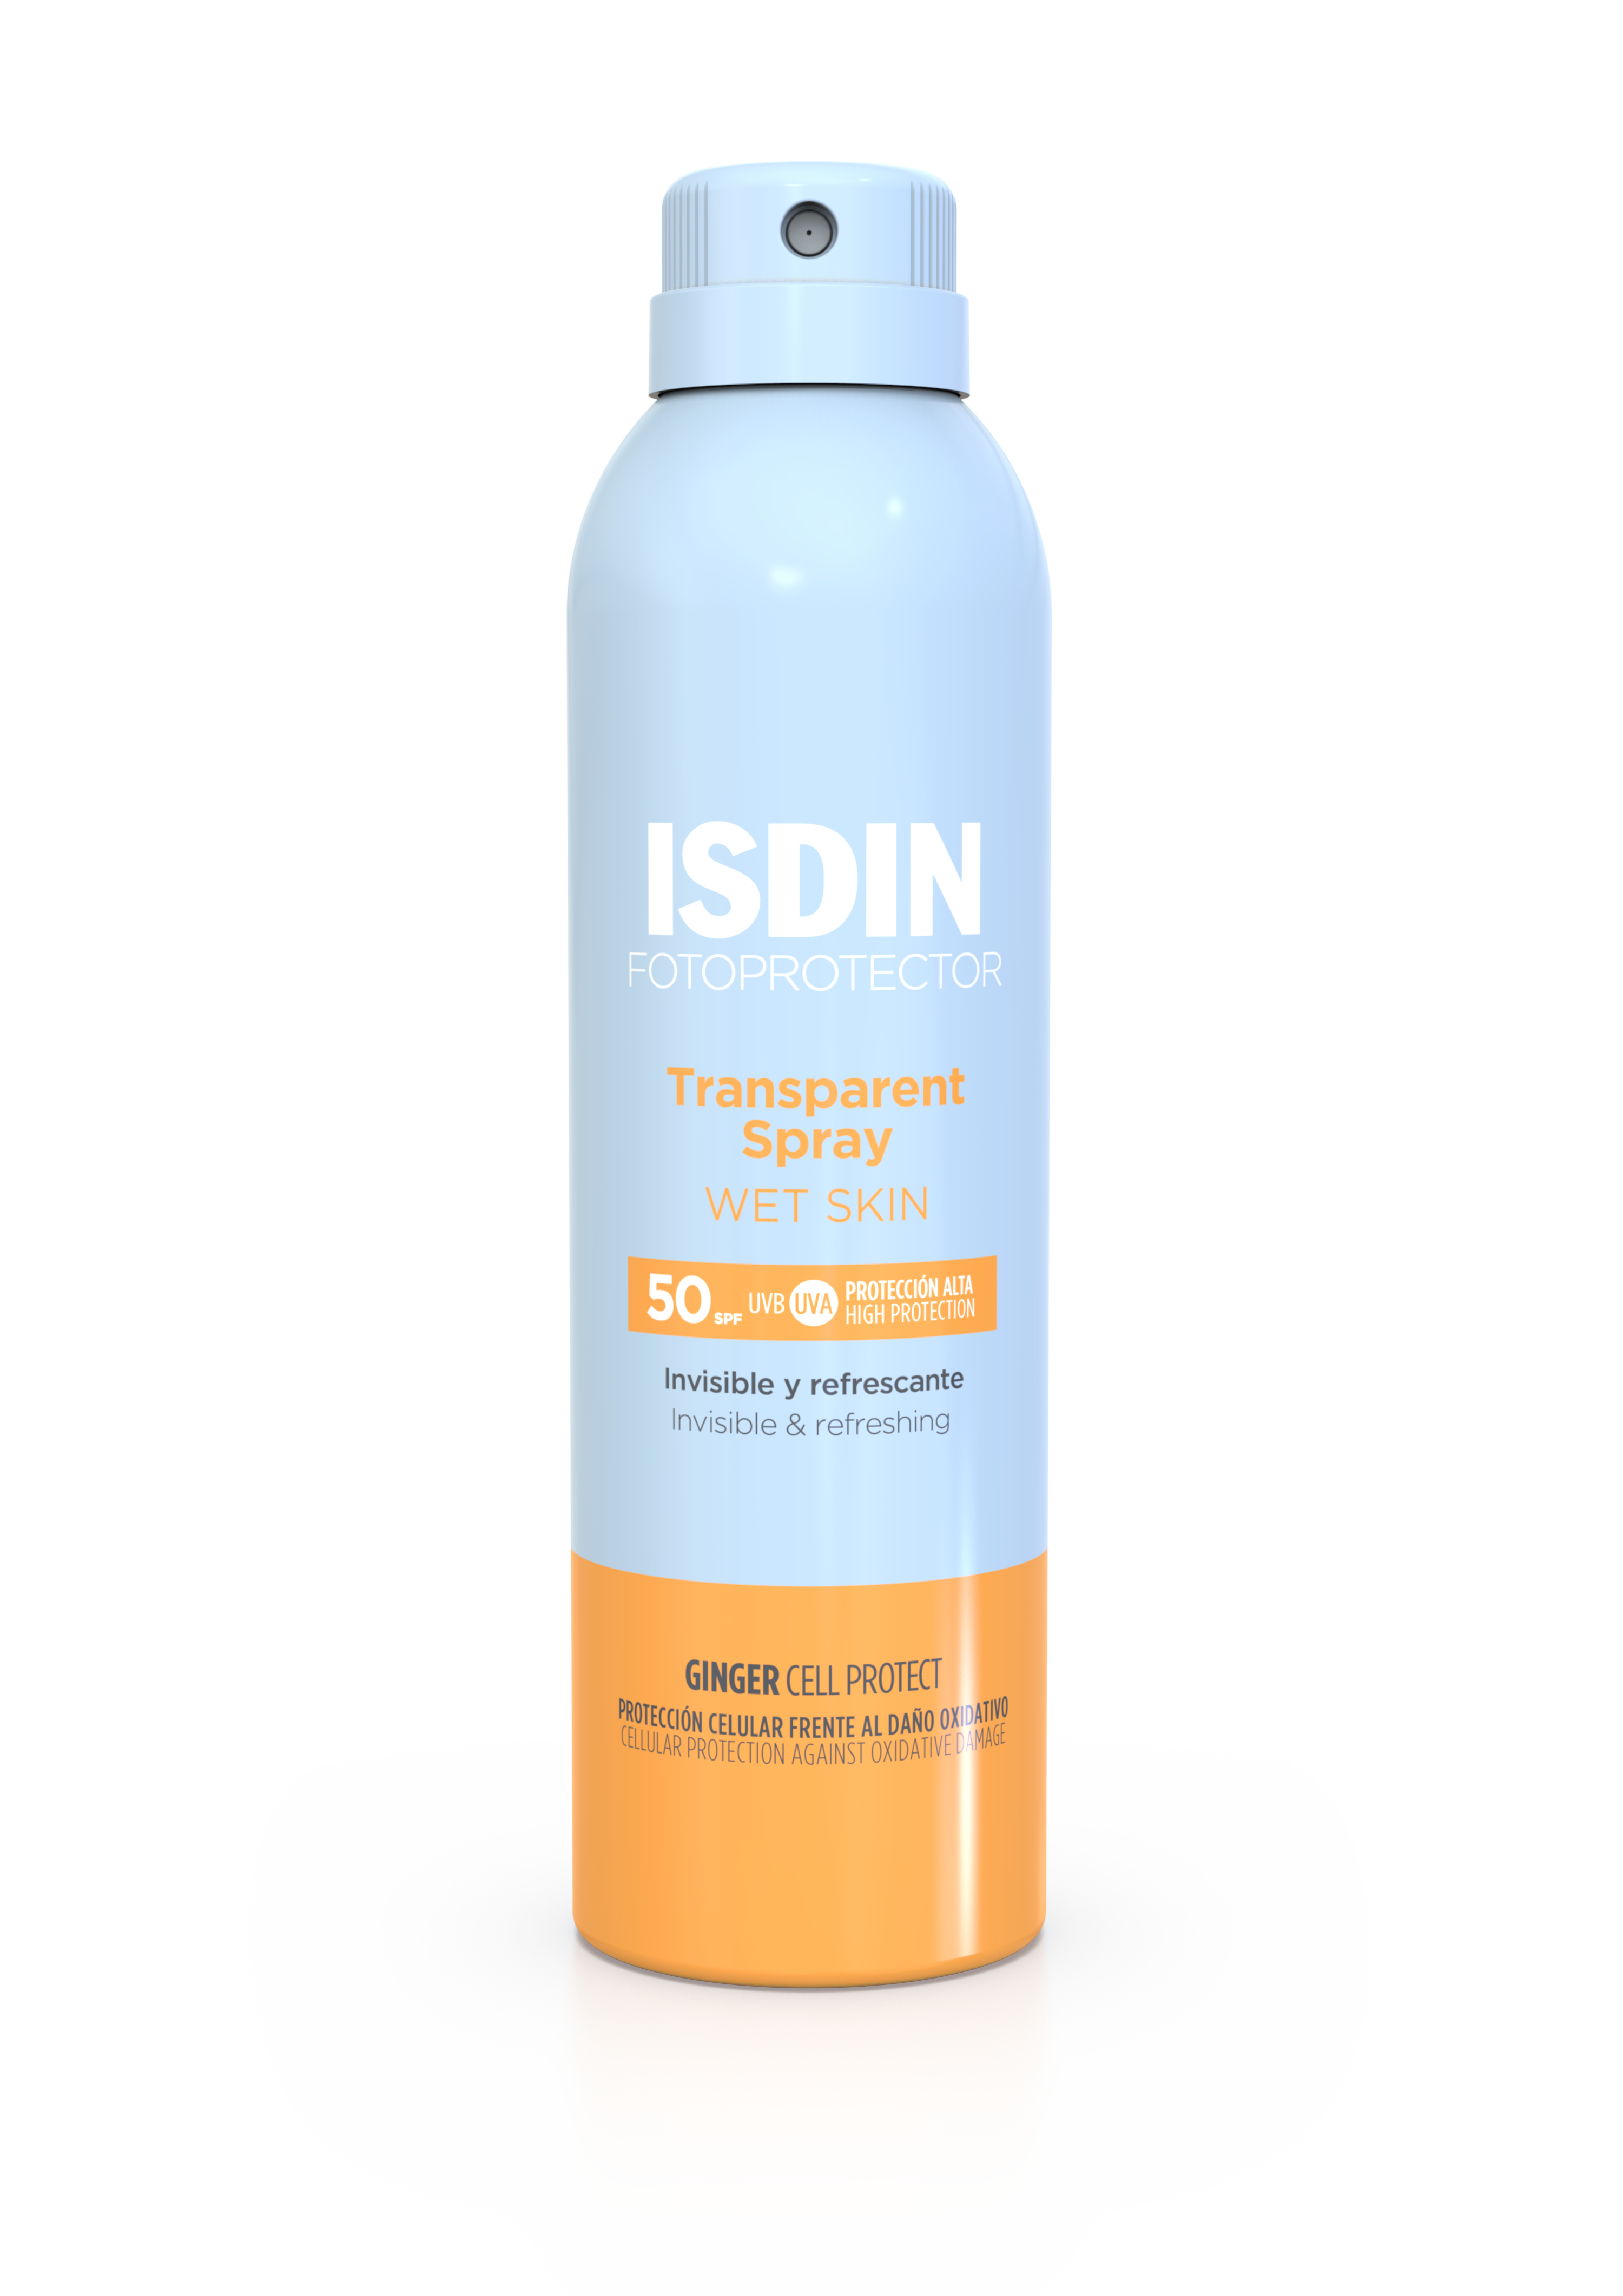 ISDIN Fotoprotector Transparent Soray WT SKIN SPF50 250ML- Protetor solar corporal 